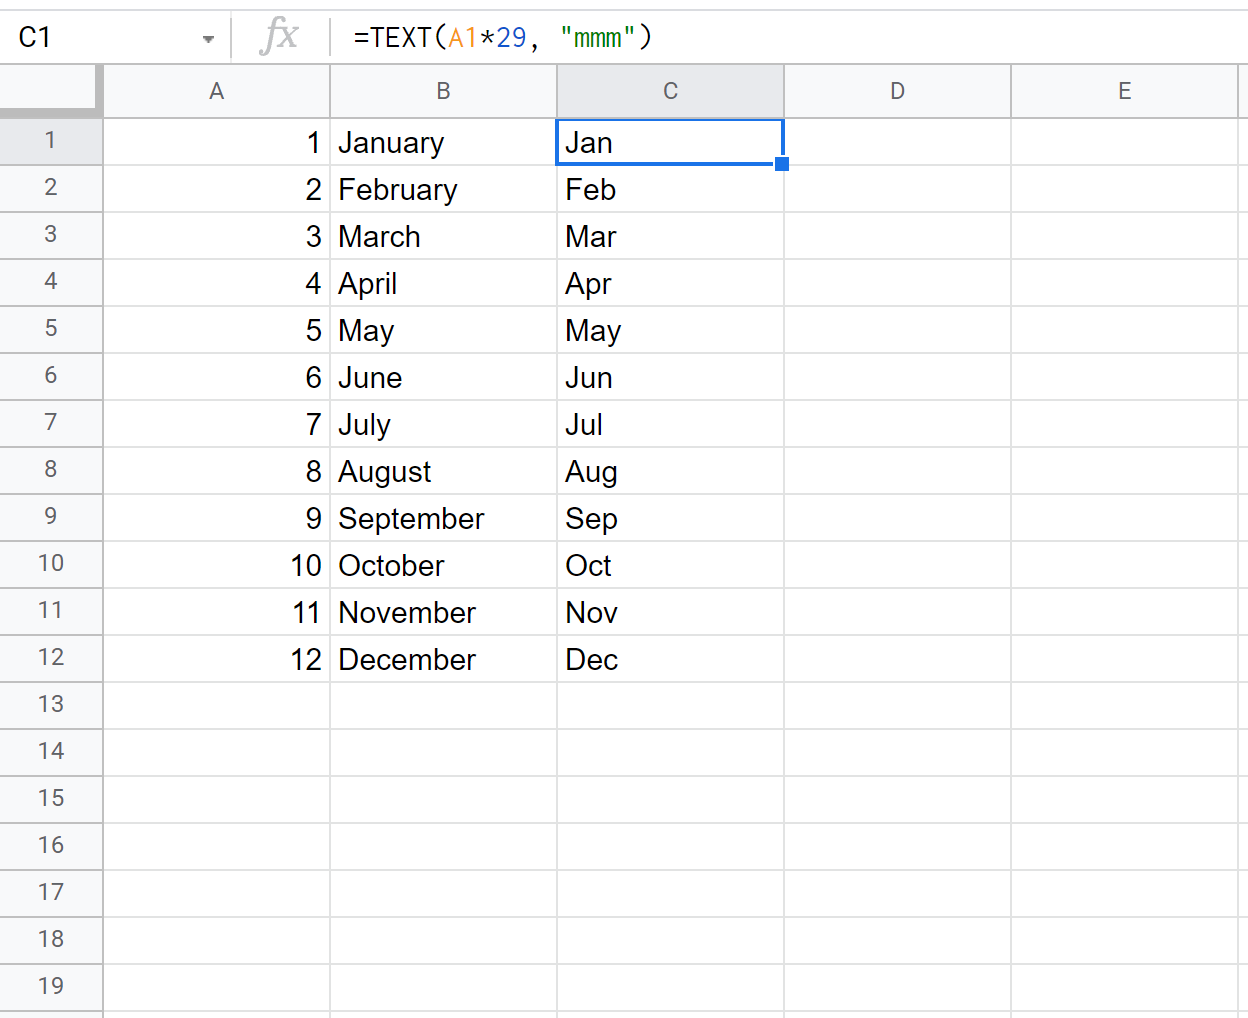 преобразовать номер месяца в сокращенное название месяца в Google Sheets